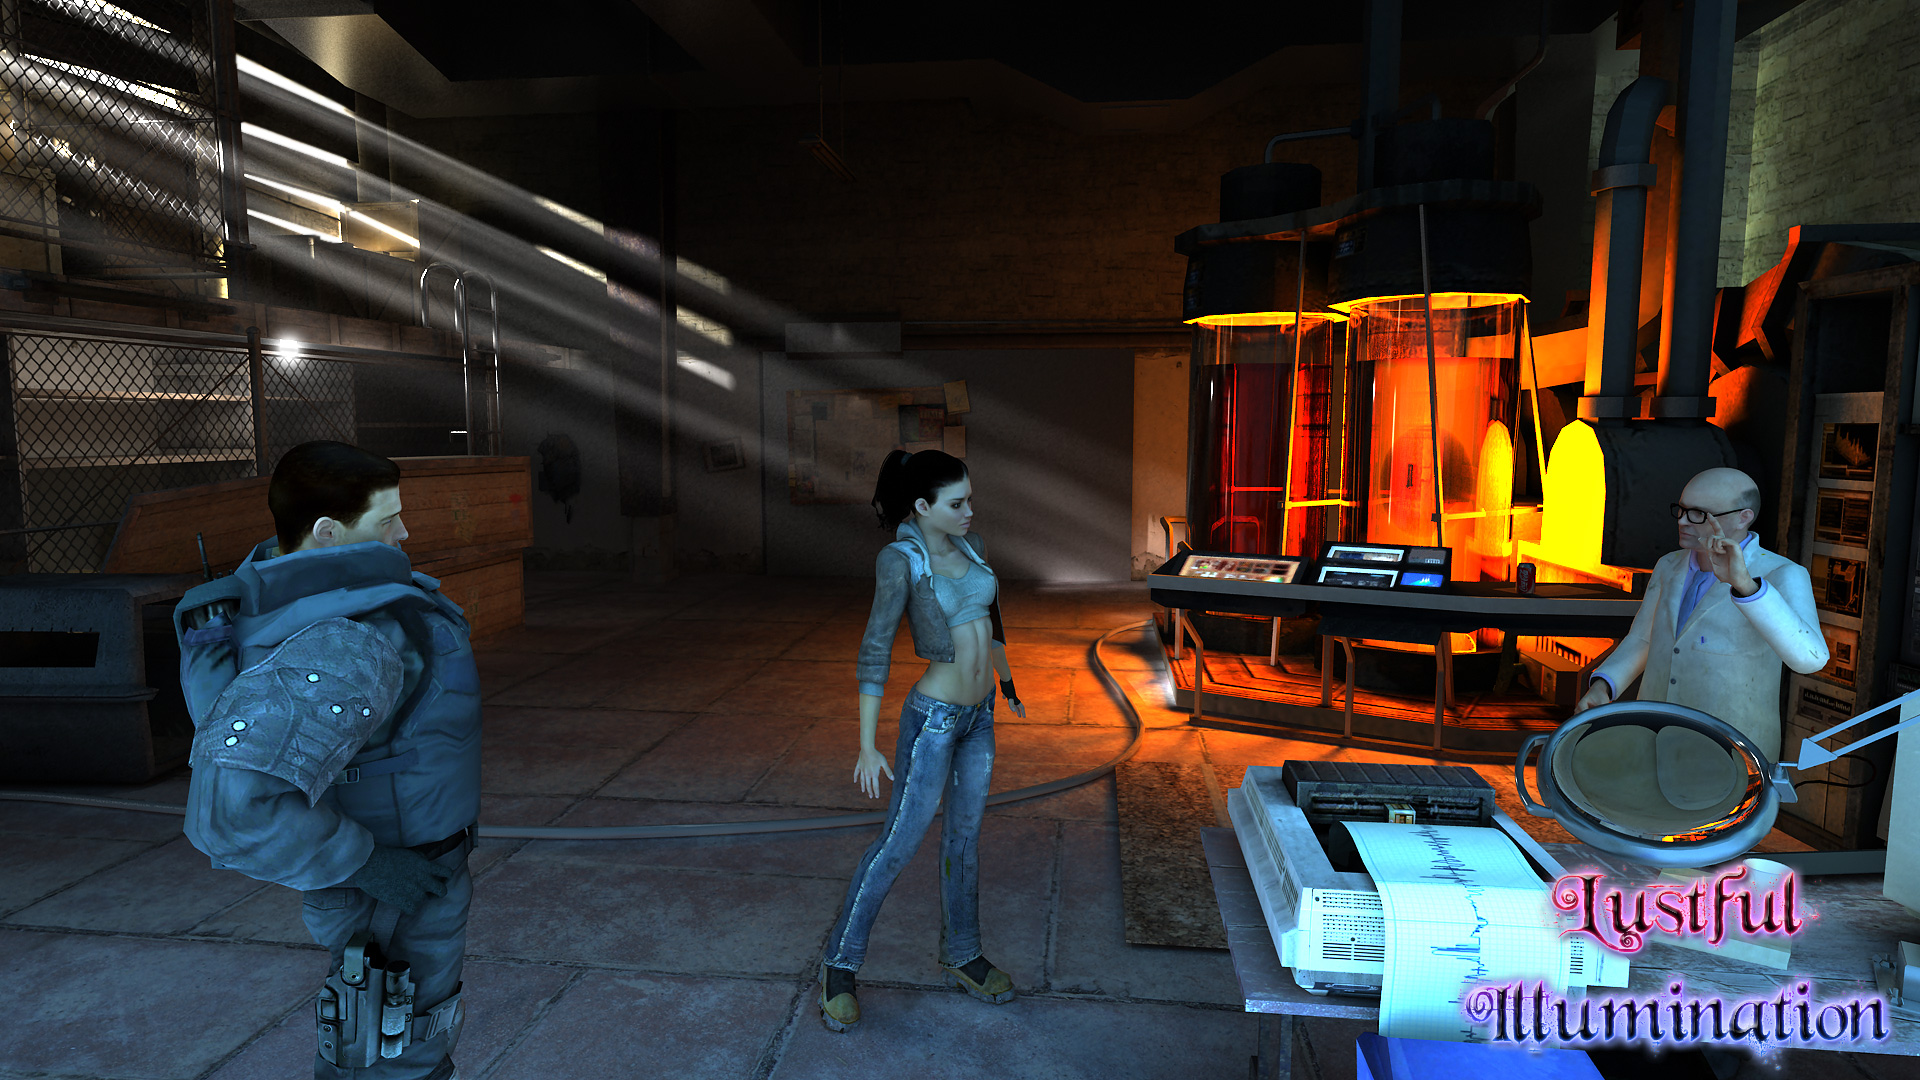 Half-Life 2 Alyx and Dr. Kleiner by edwardzou on DeviantArt